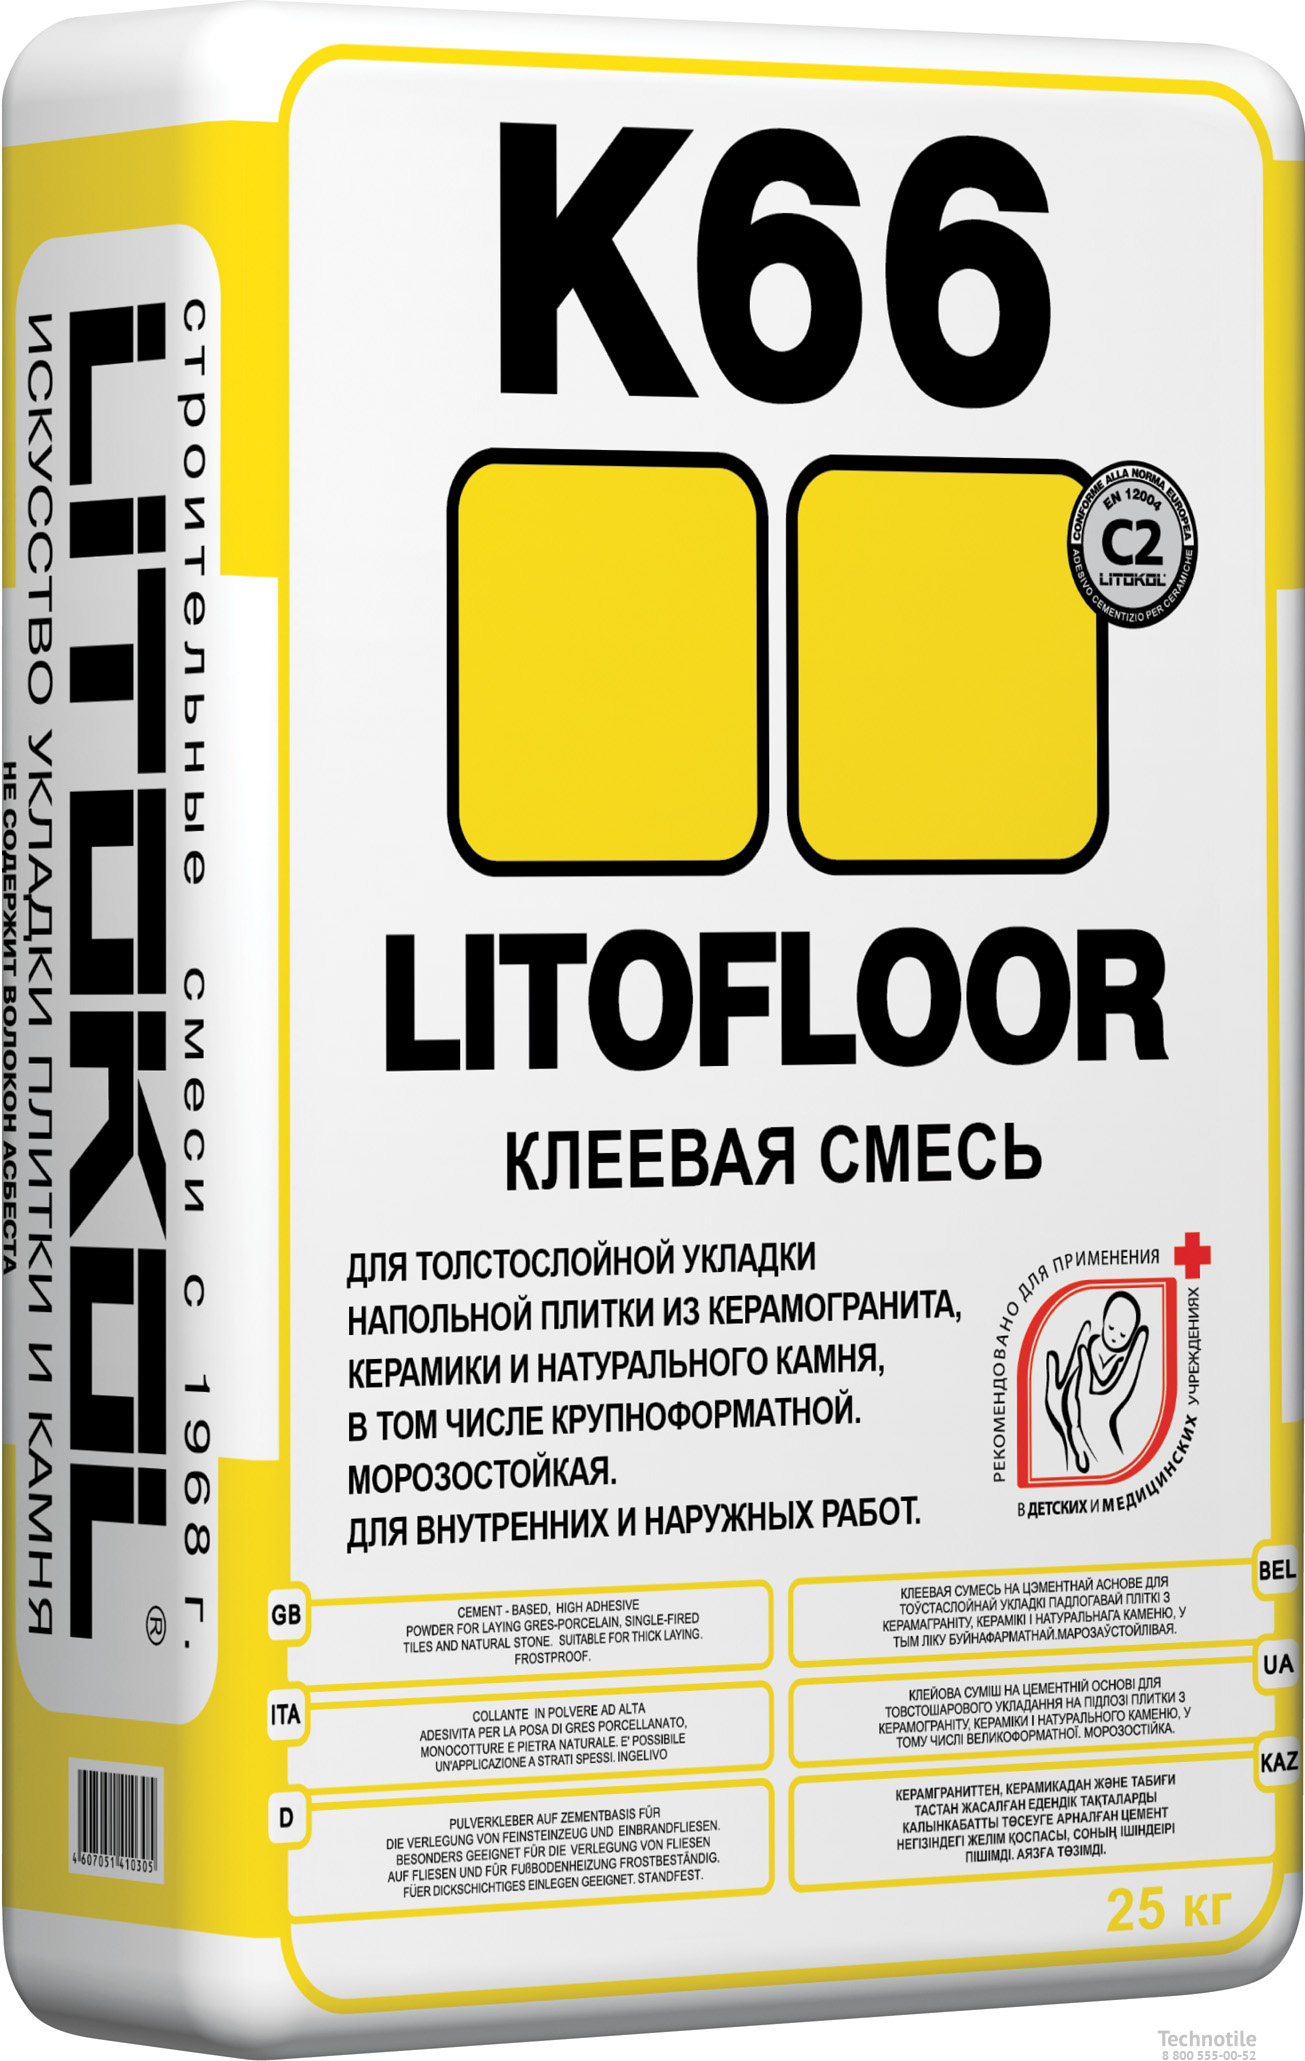 Клеевая смесь Litofloor К66 серый 25кг